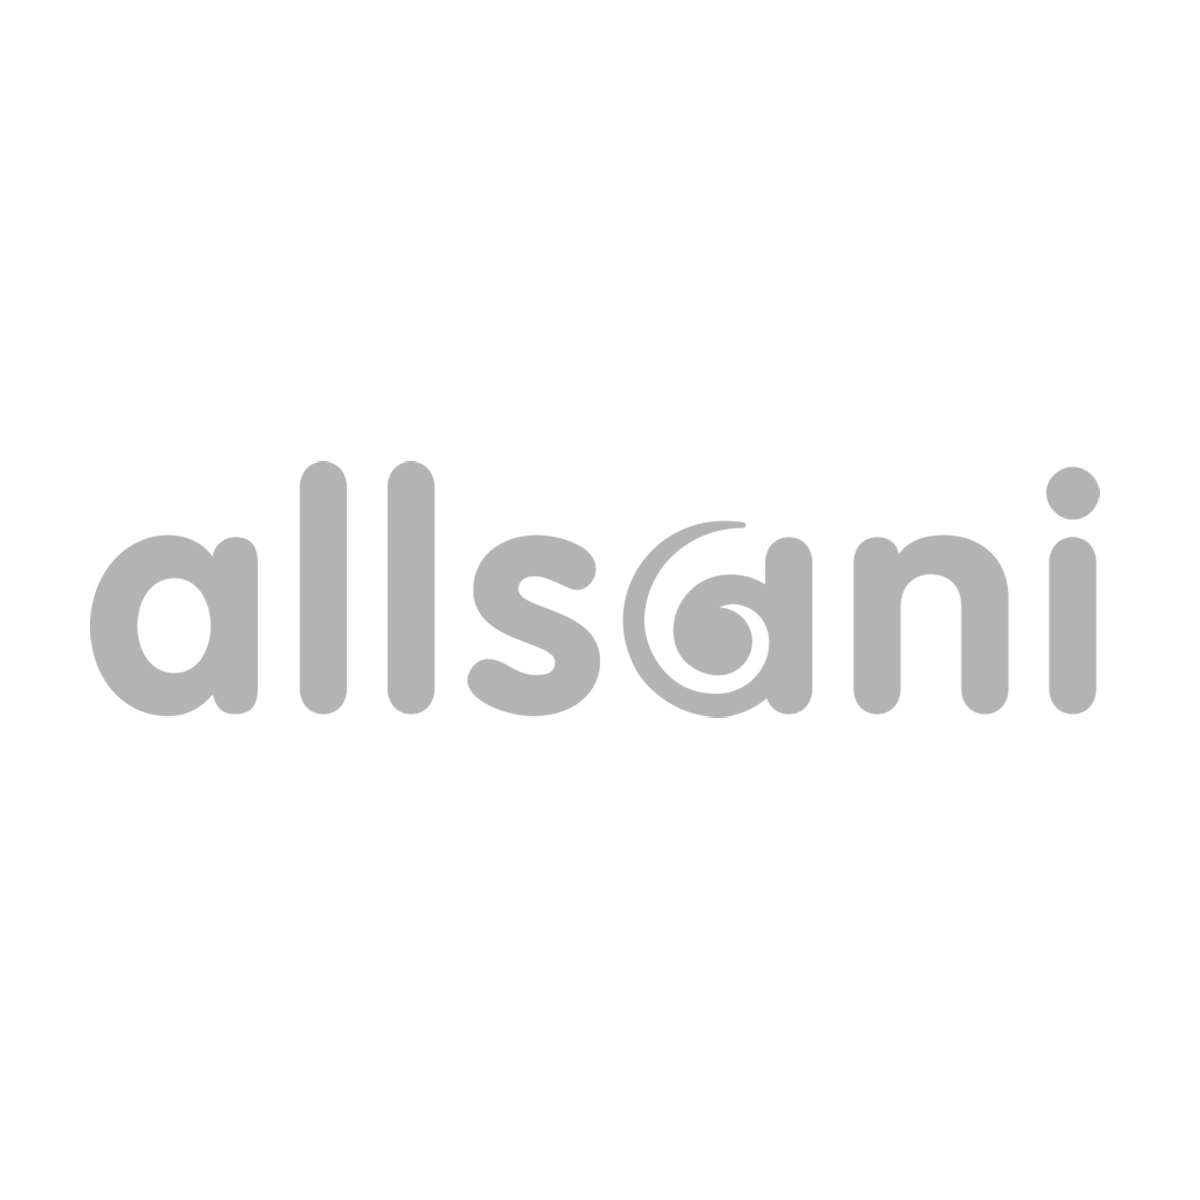 (c) Allsani.com